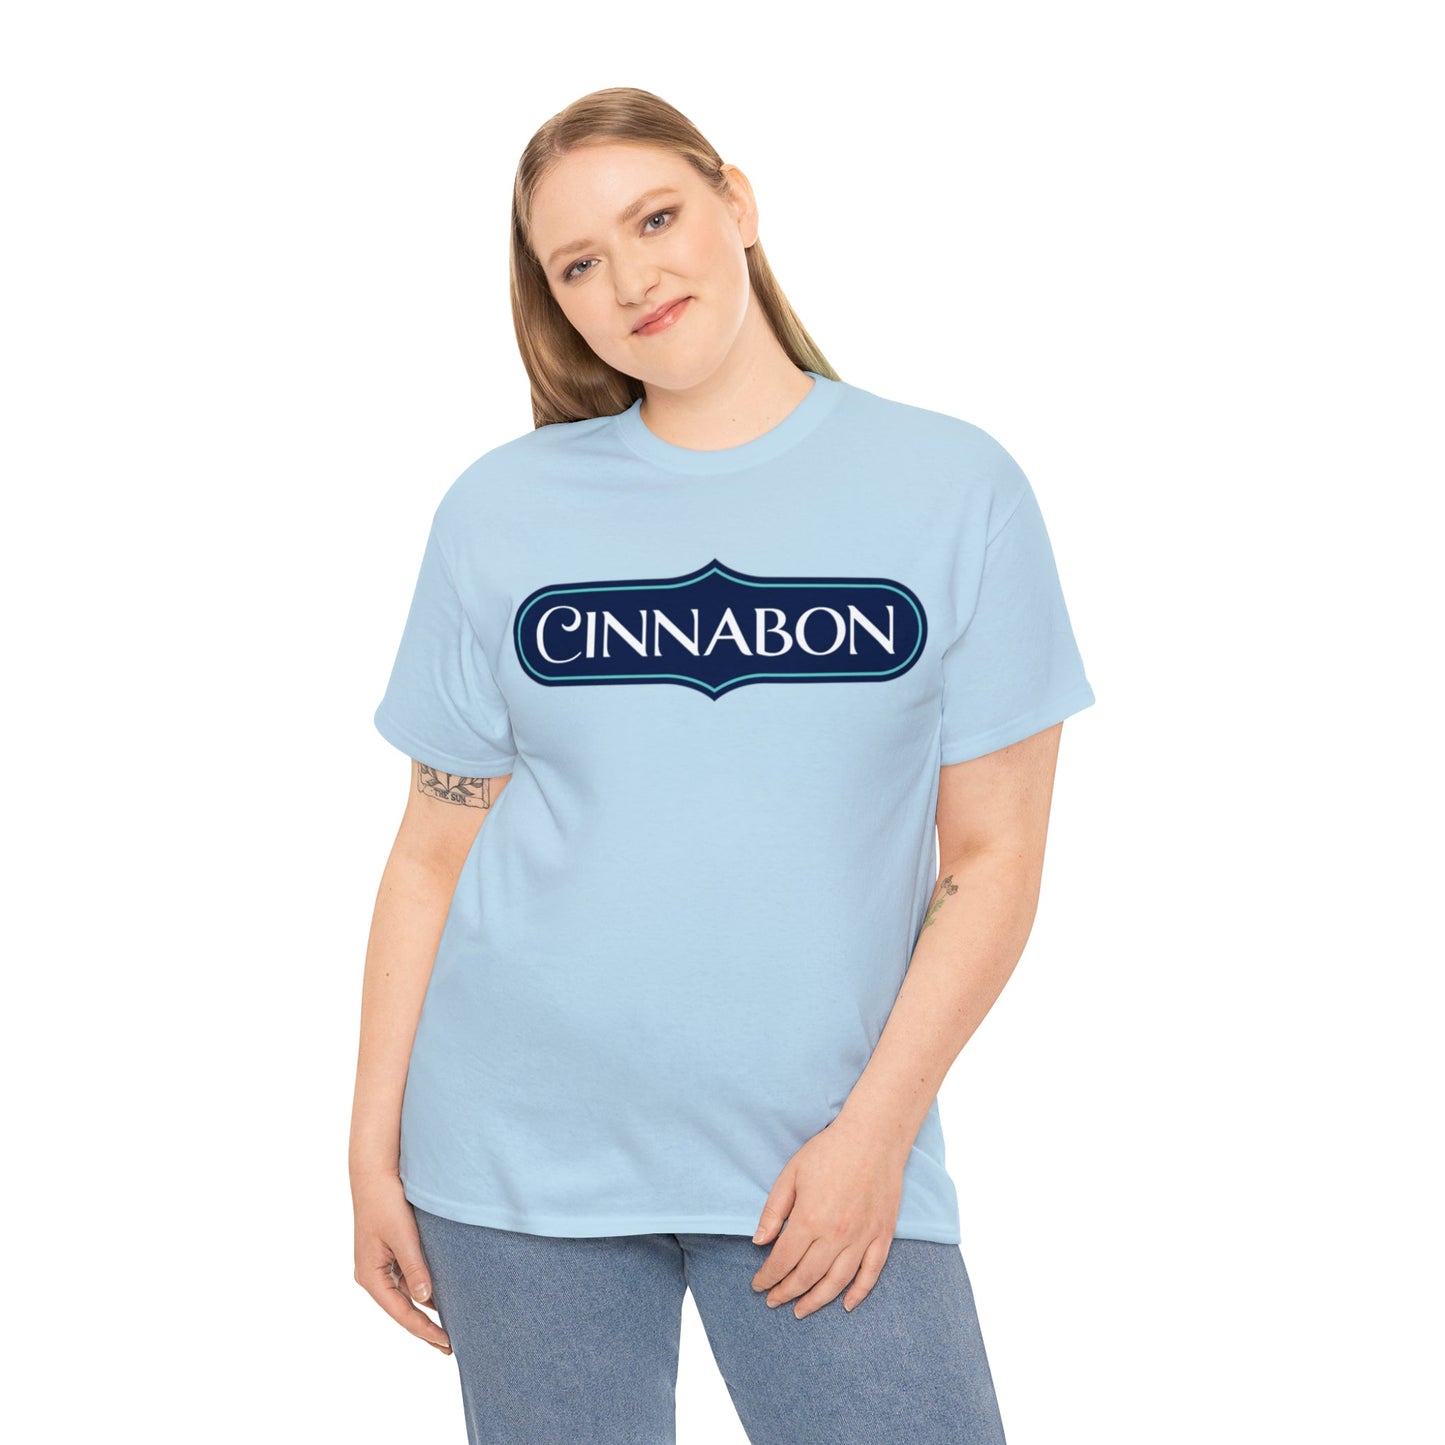 Cinnabon T-Shirt - RetroTeeShop